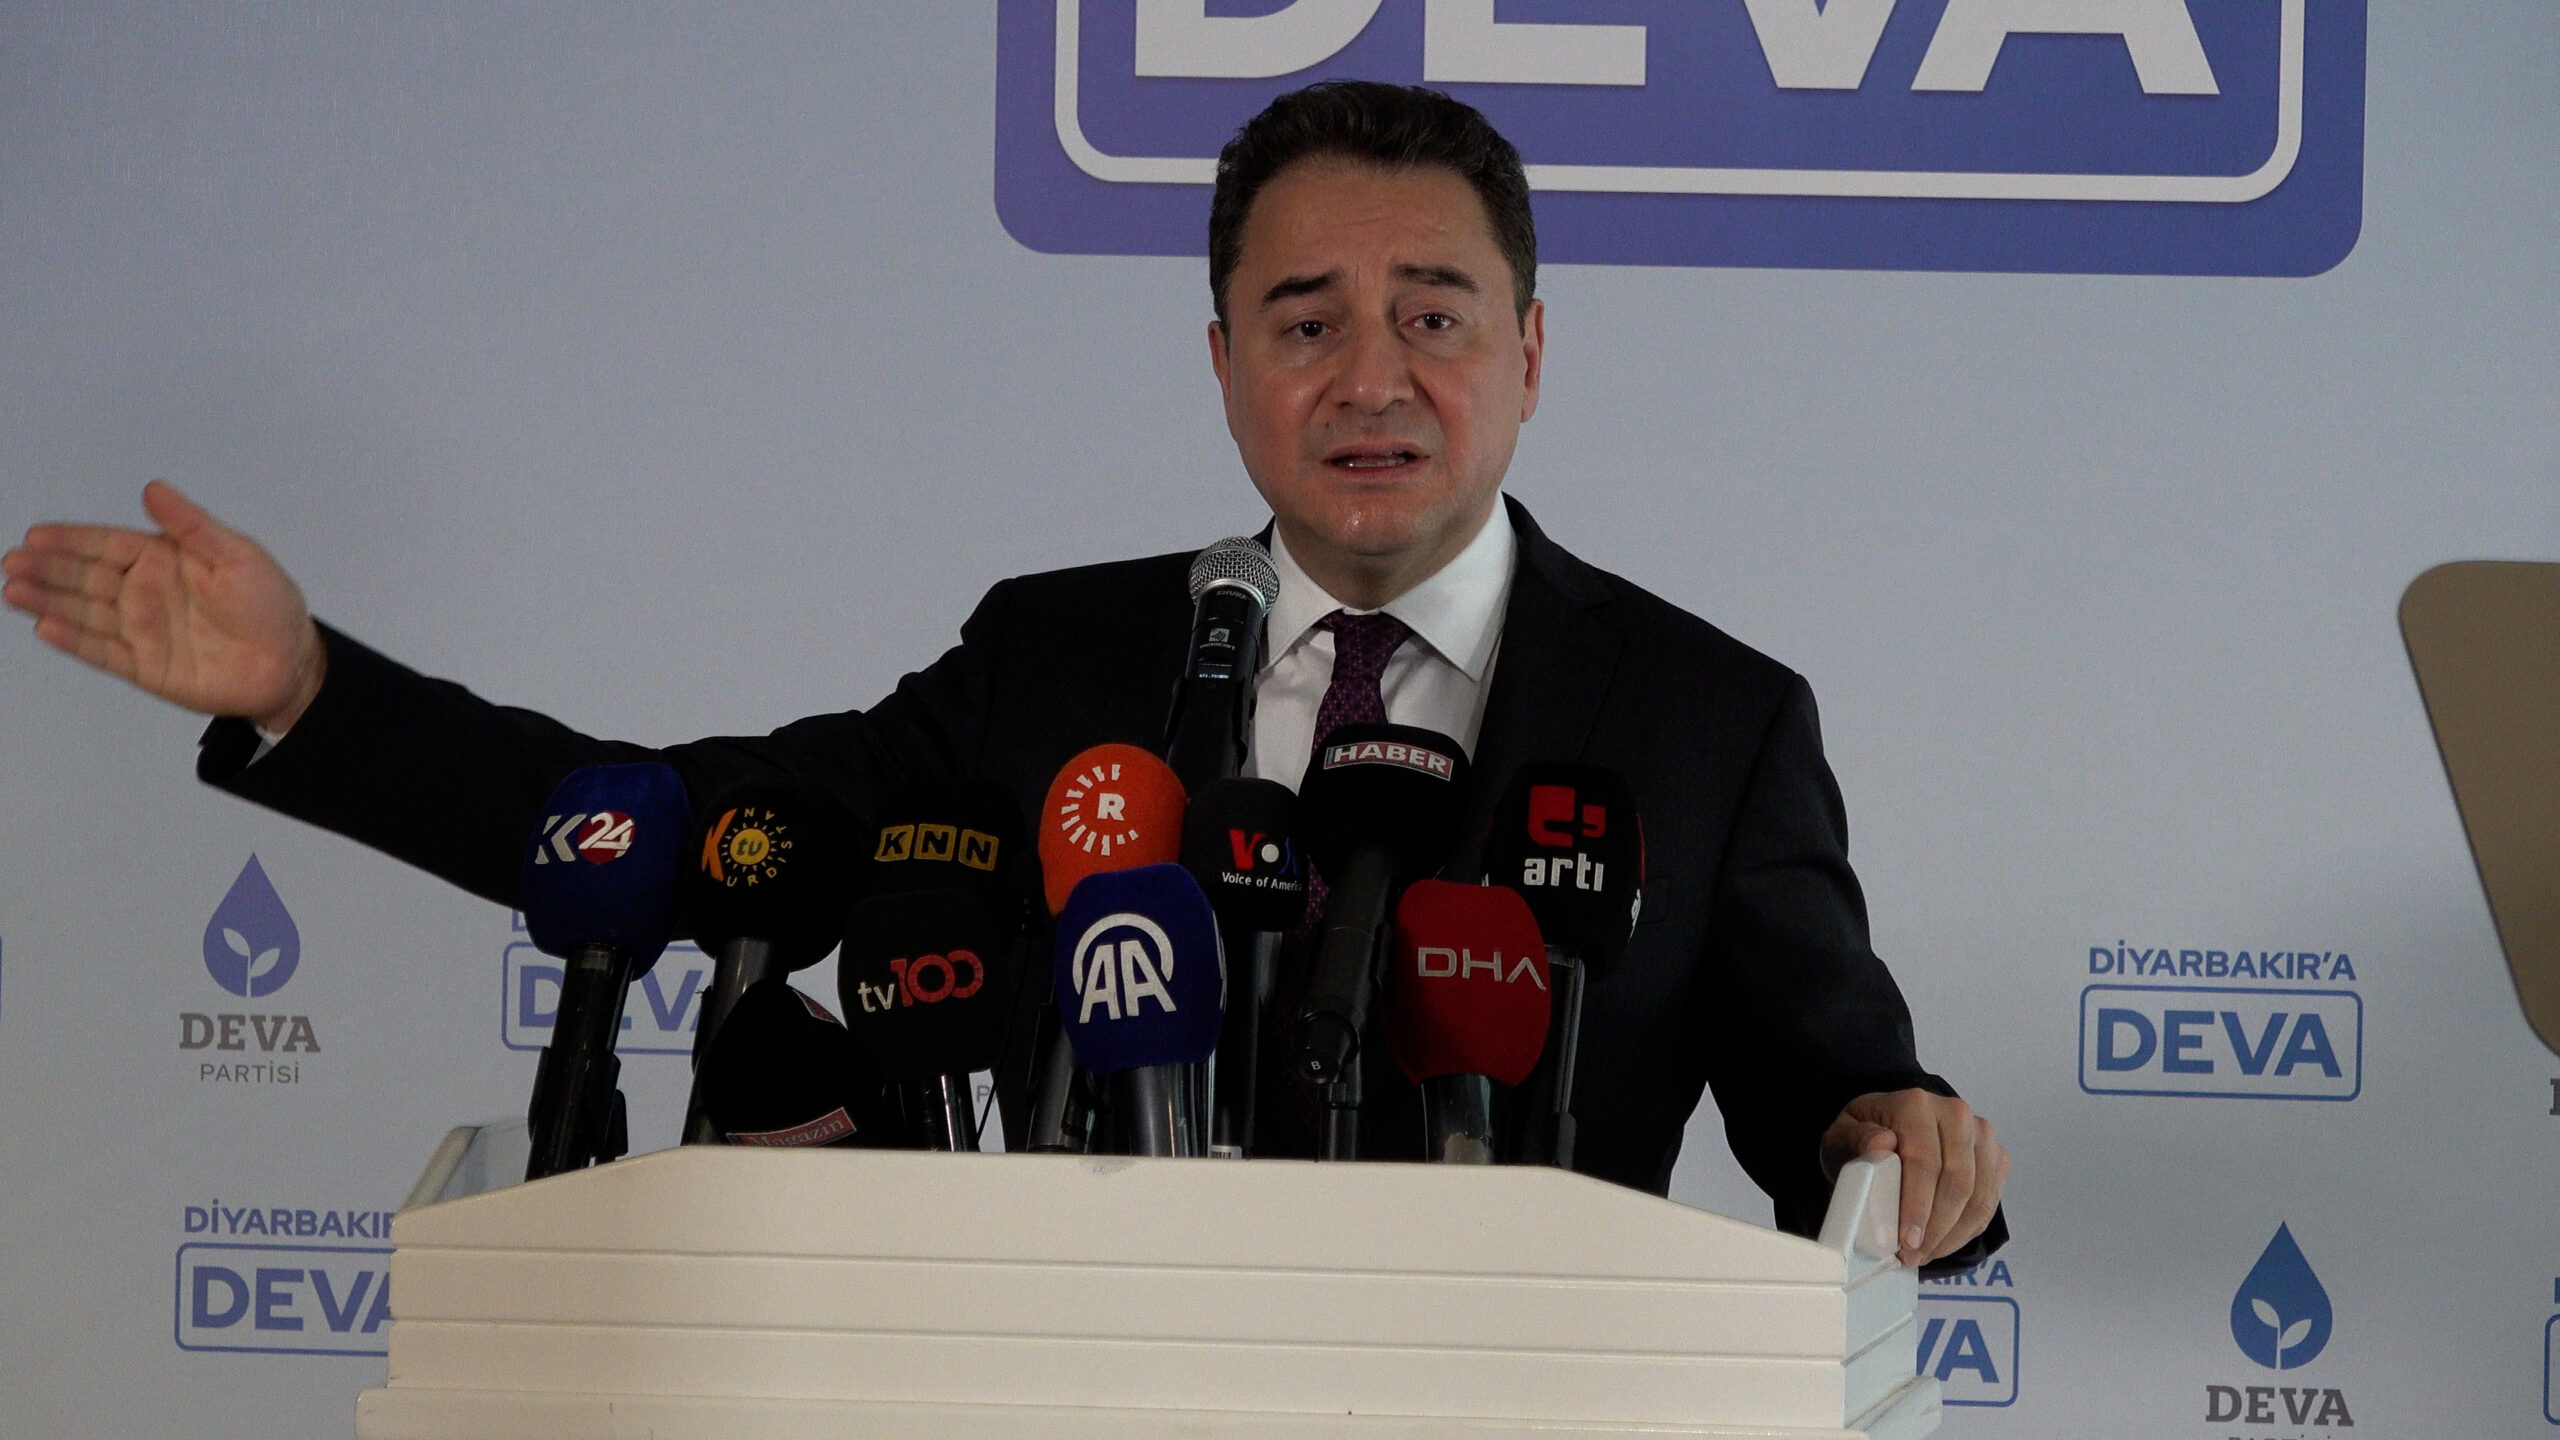 DEVA Partisi Genel Başkanı Ali Babacan: Diyarbakırlıların Oylarının Bir Önemi Yok!